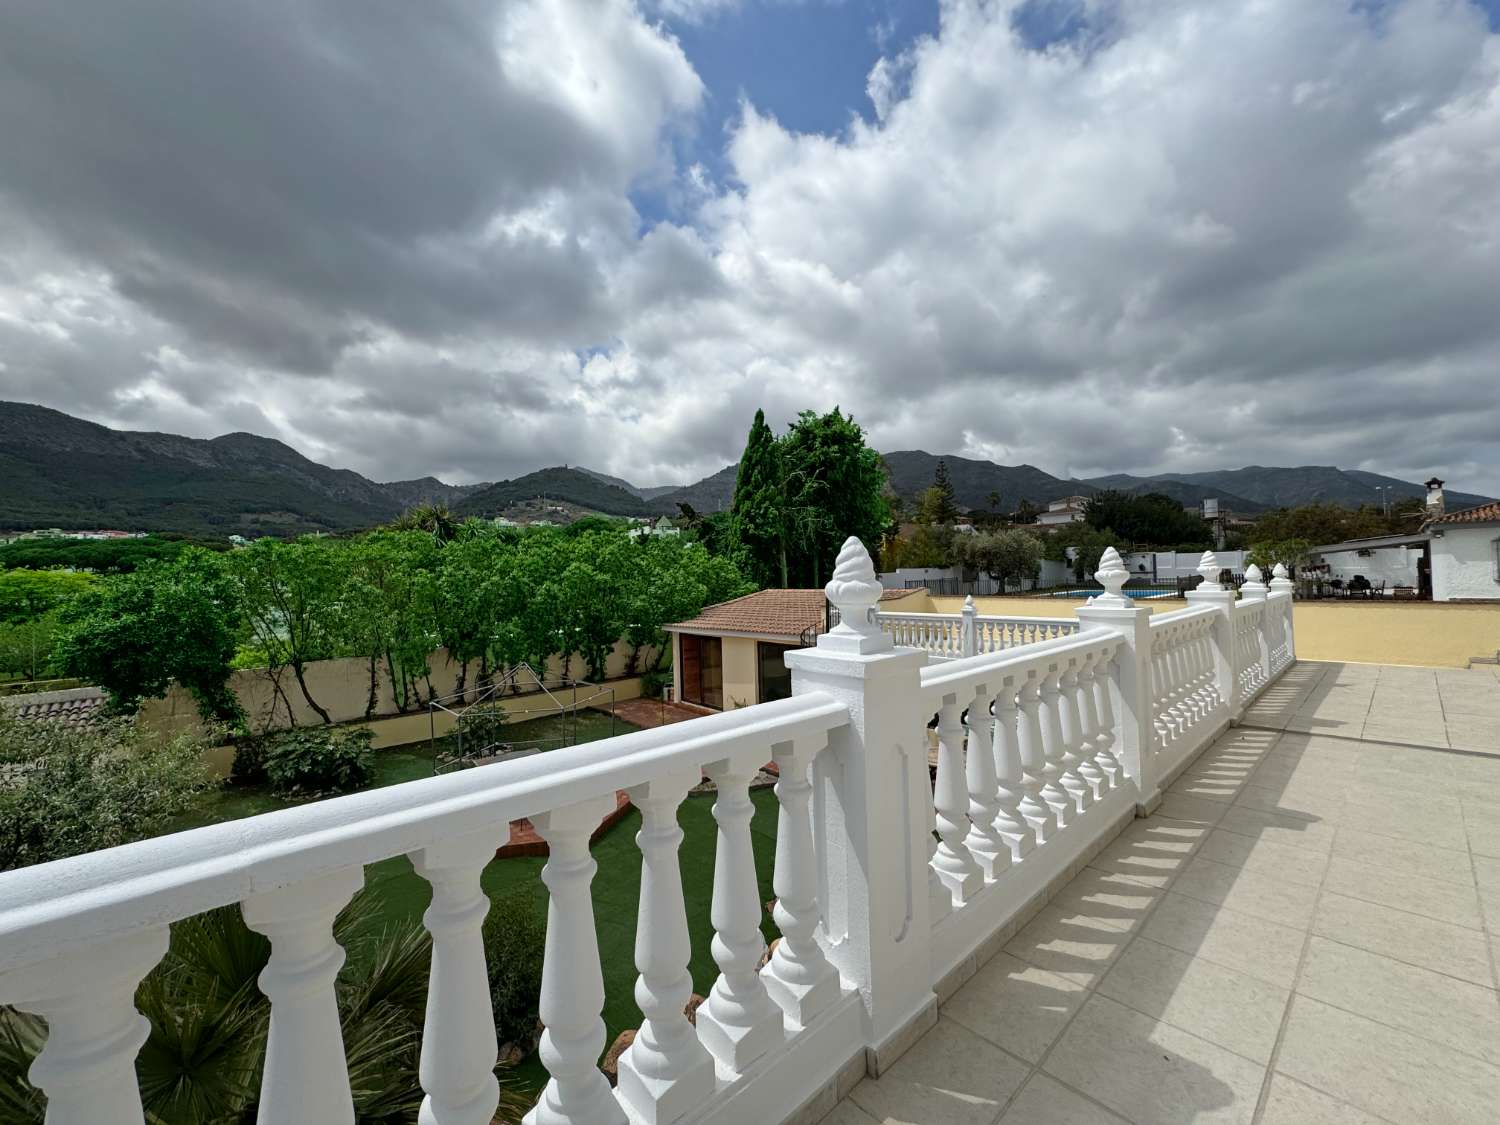 Gran Villa en parcela de 2500m2 con licencia turística en zona baja de Pinos de Alhaurín.